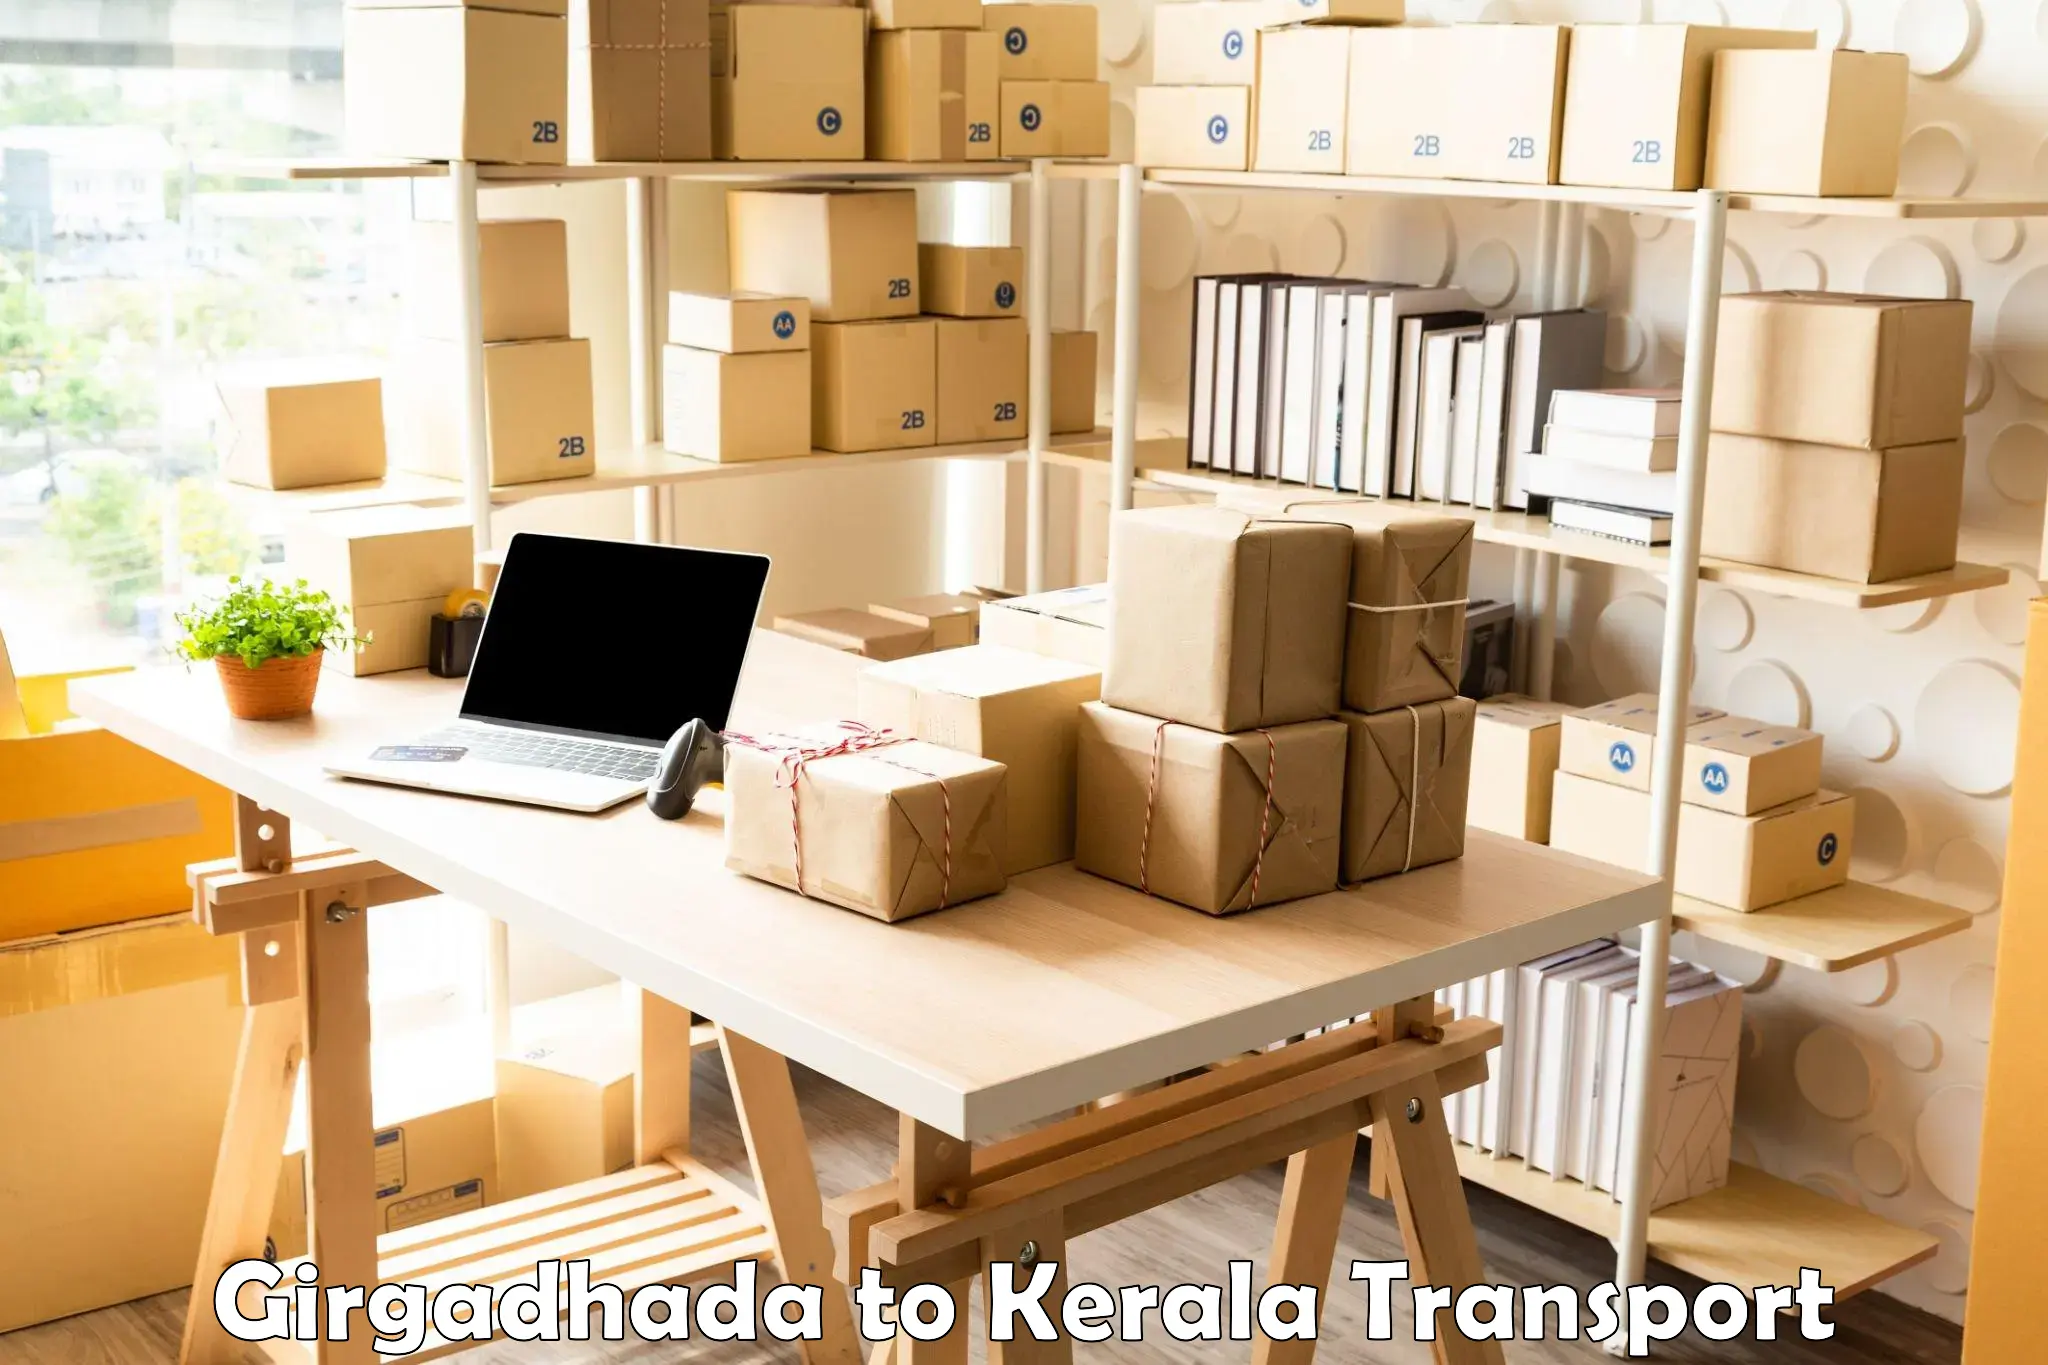 Container transport service Girgadhada to Mundakayam